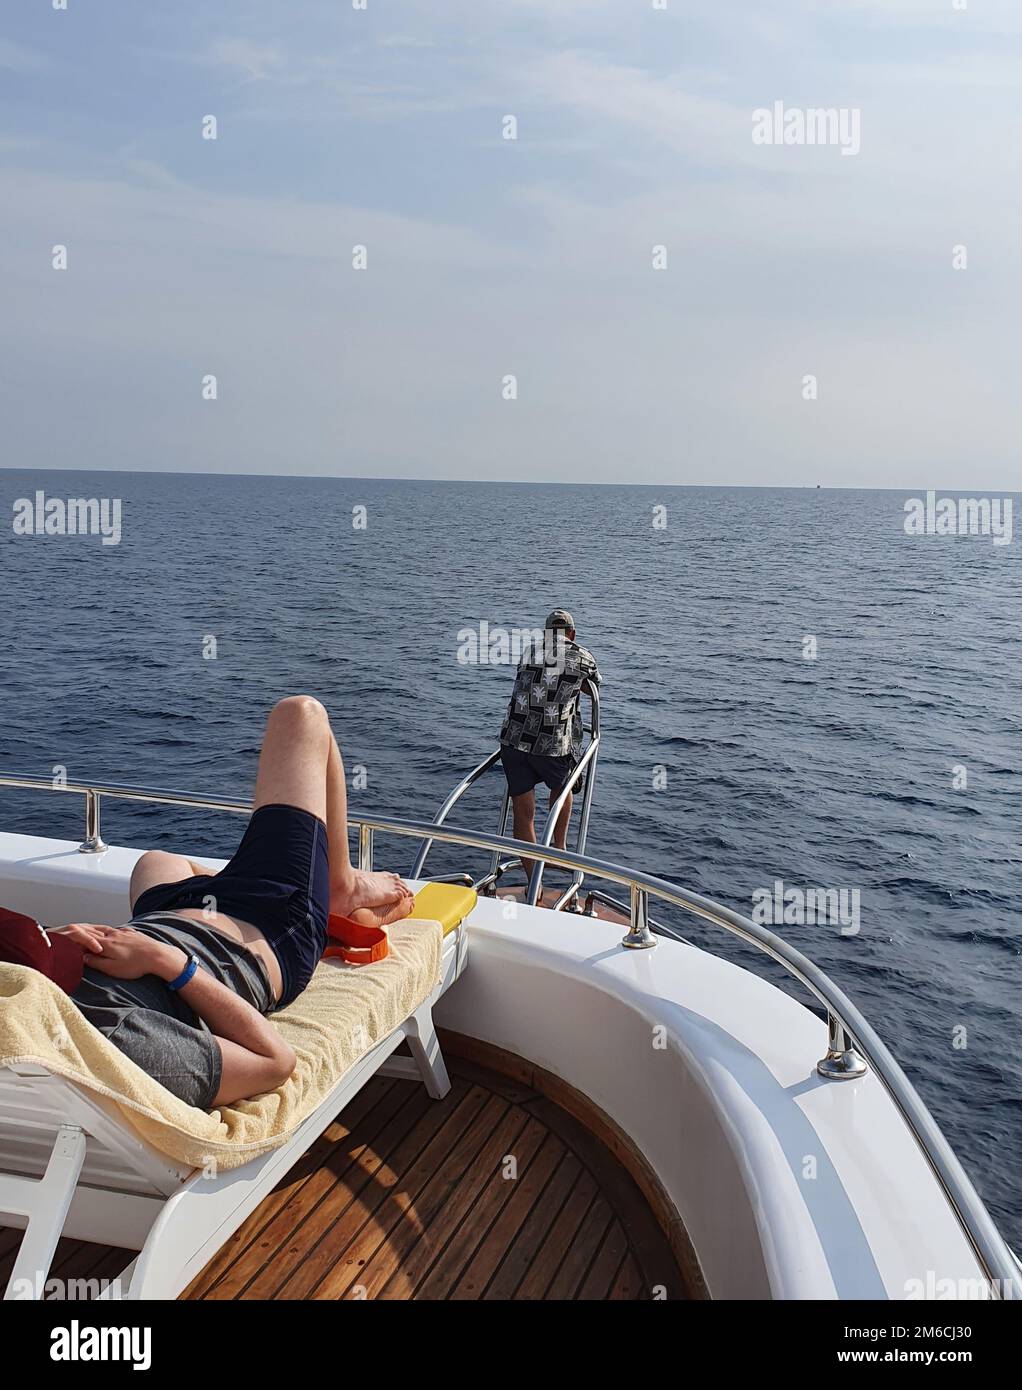 Ein Mann auf einer Sonnenliege verbringt einen Urlaub auf einer Jacht und schaut auf das Meer Stockfoto